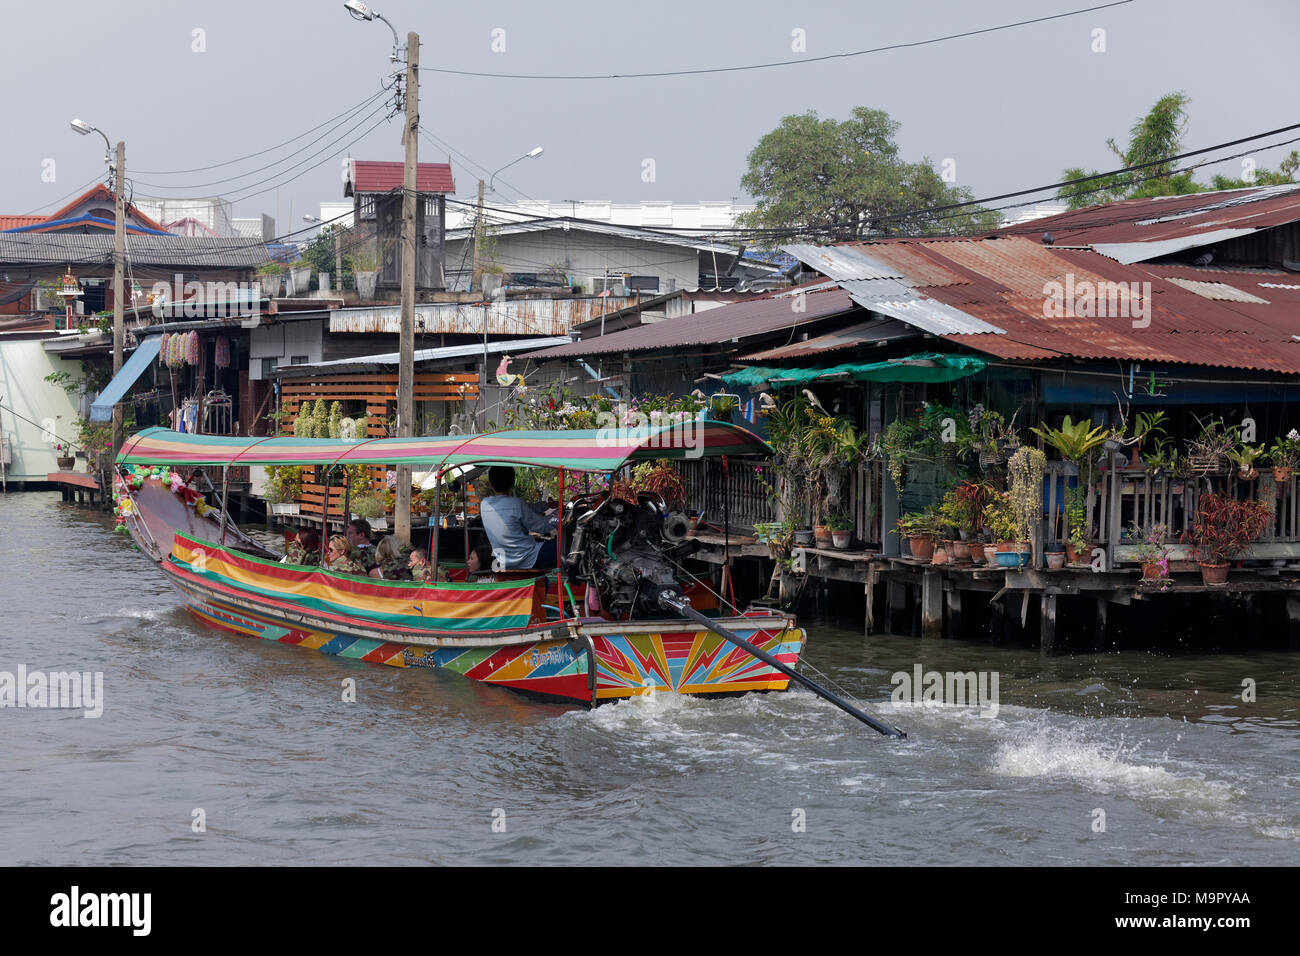 Canal avec bateau longtail et maisons en bois sur pilotis, Khlong Bang Luang, district d'origine Thonburi, Bangkok, Thaïlande Banque D'Images